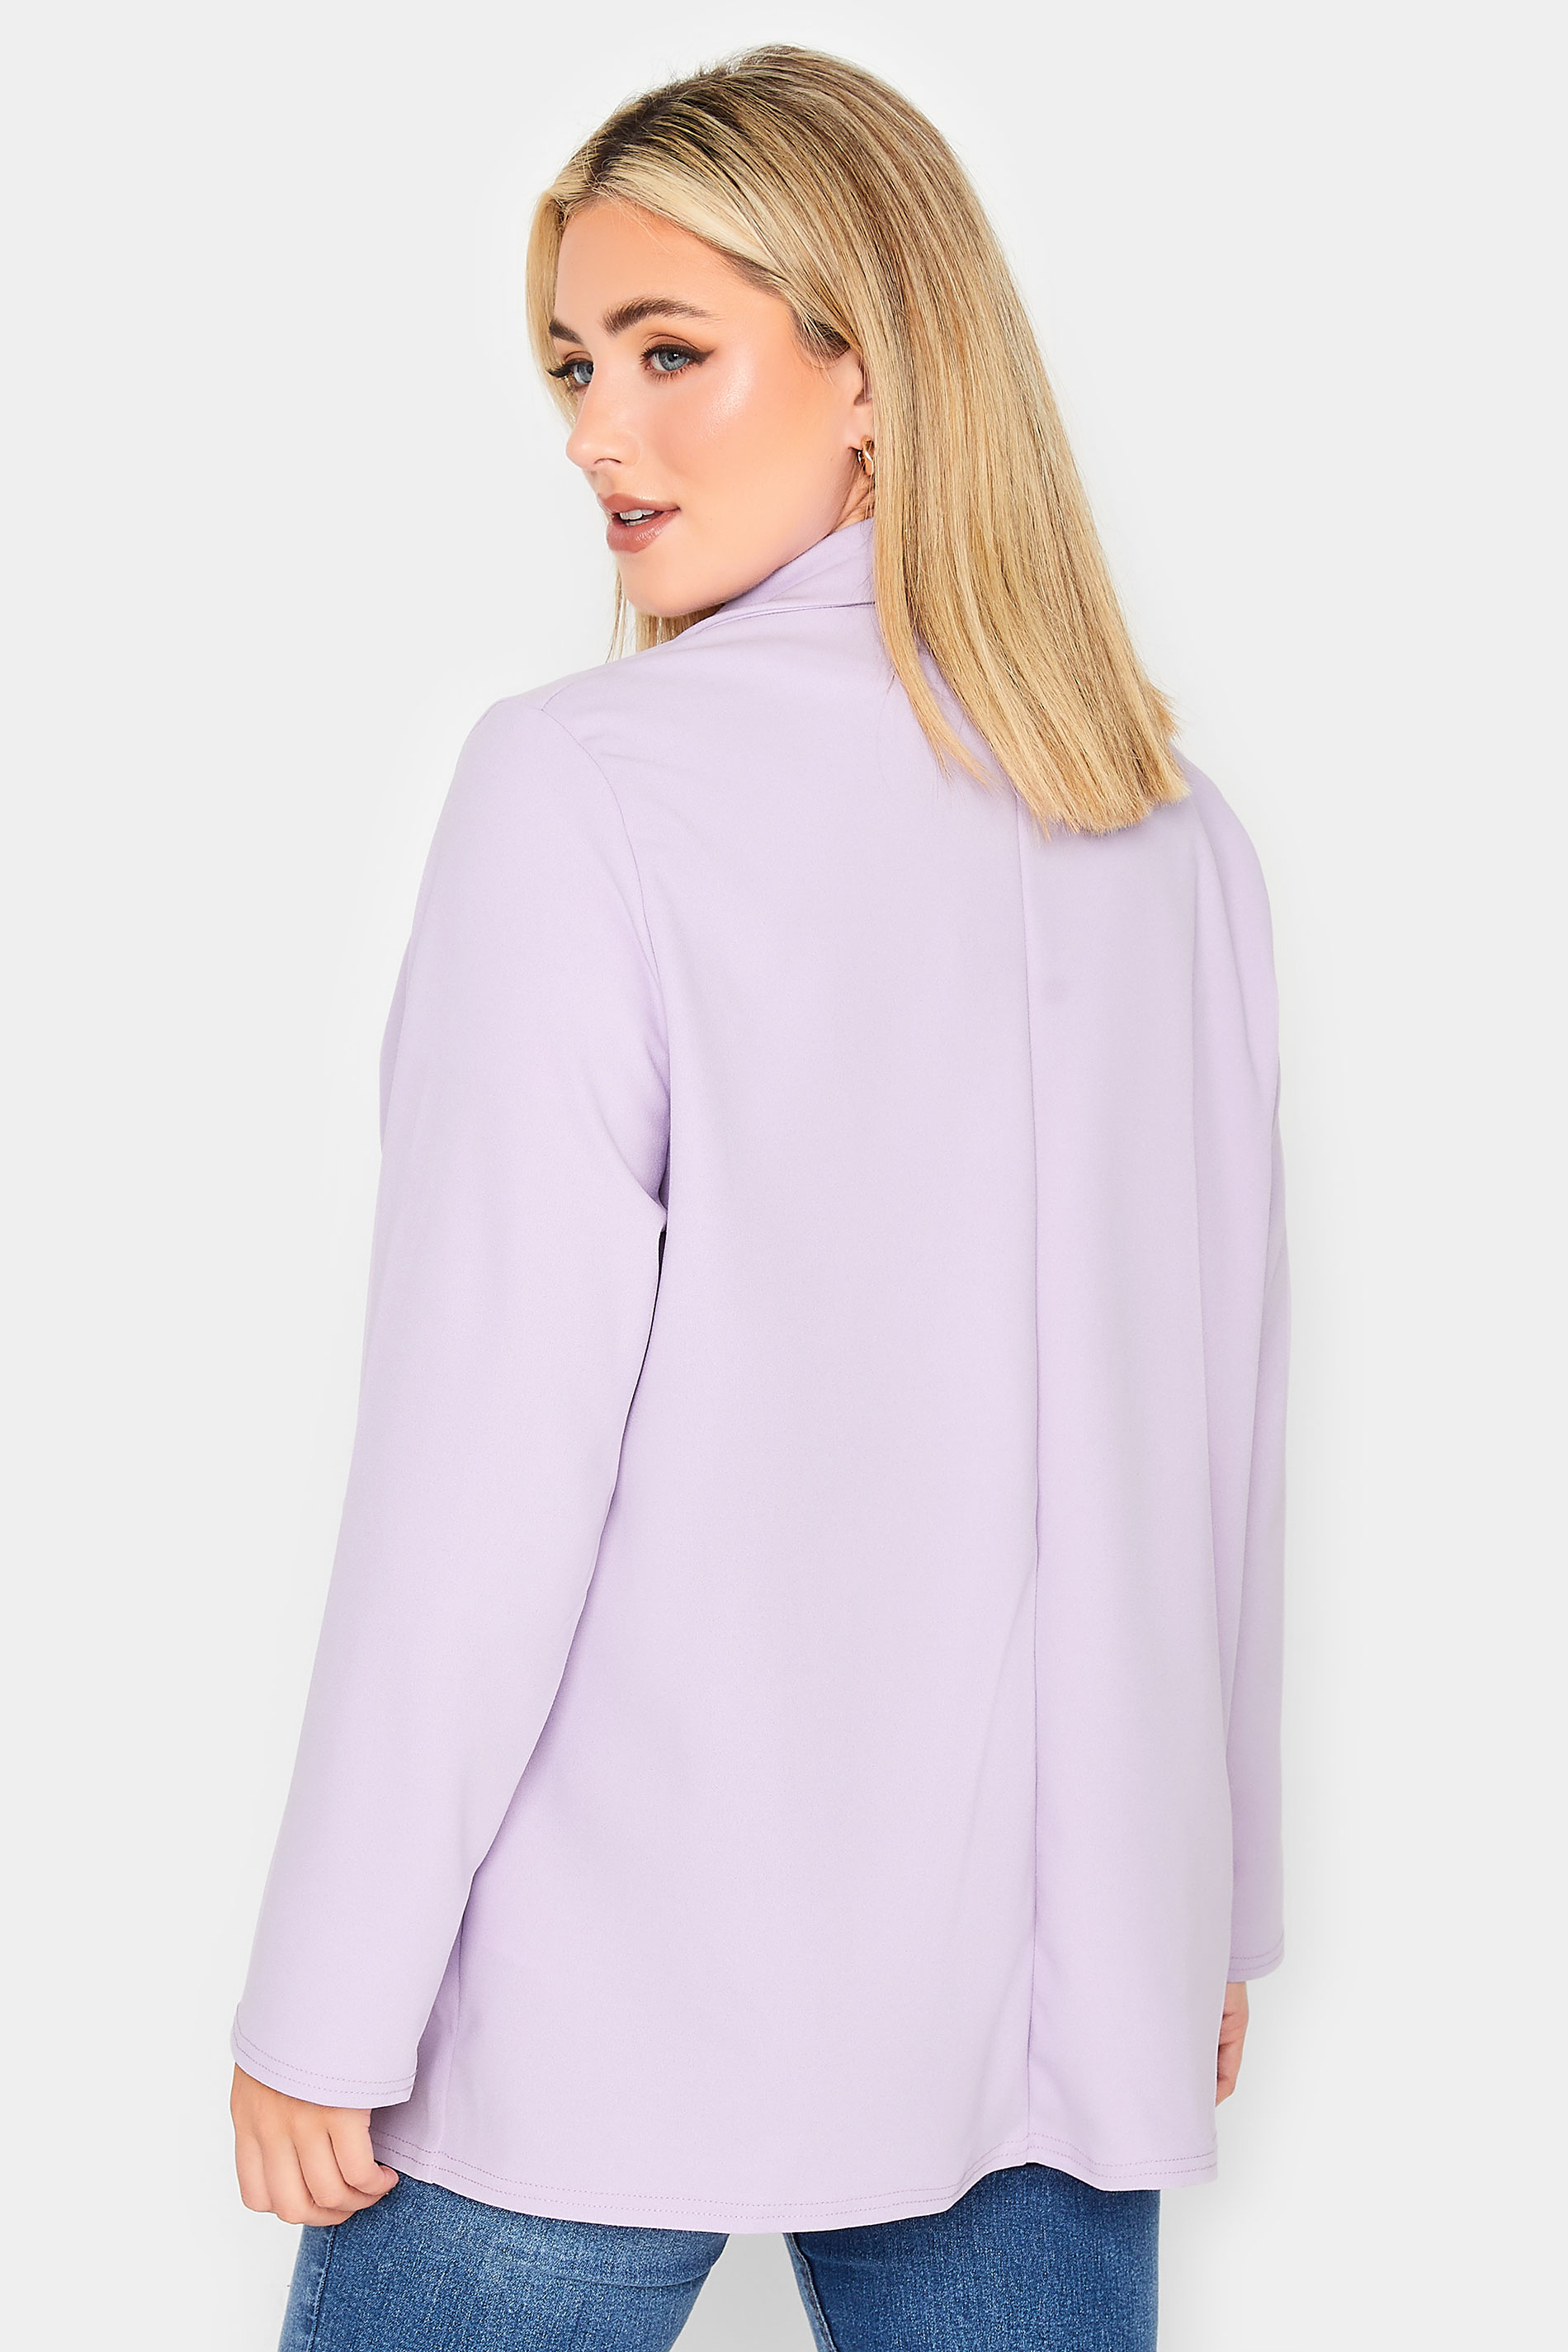 YOURS PETITE Plus Size Lilac Purple Scuba Blazer | Yours Clothing 3